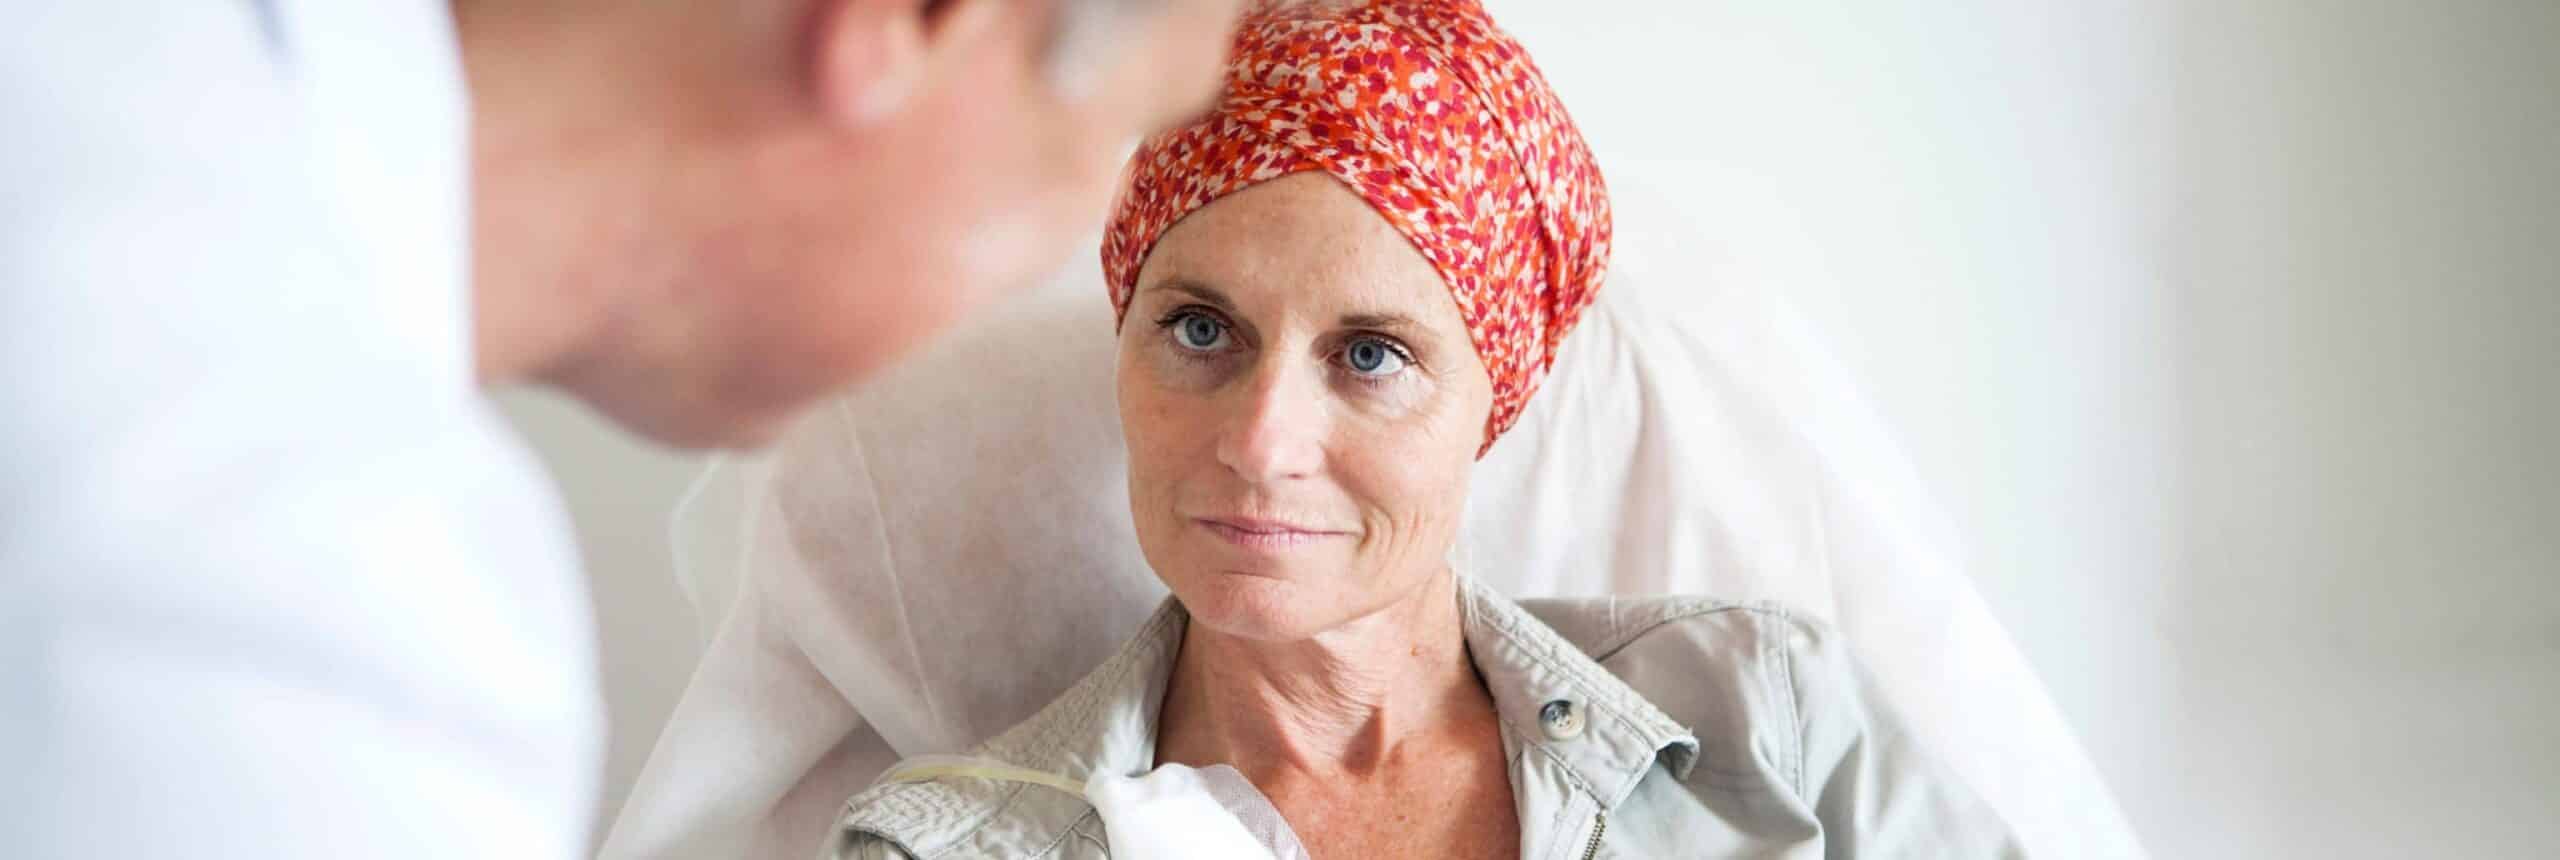 Cancer de la peau : la chimiothérapie est-elle obligatoire ? | Centre chirurgie dermatologique | Paris